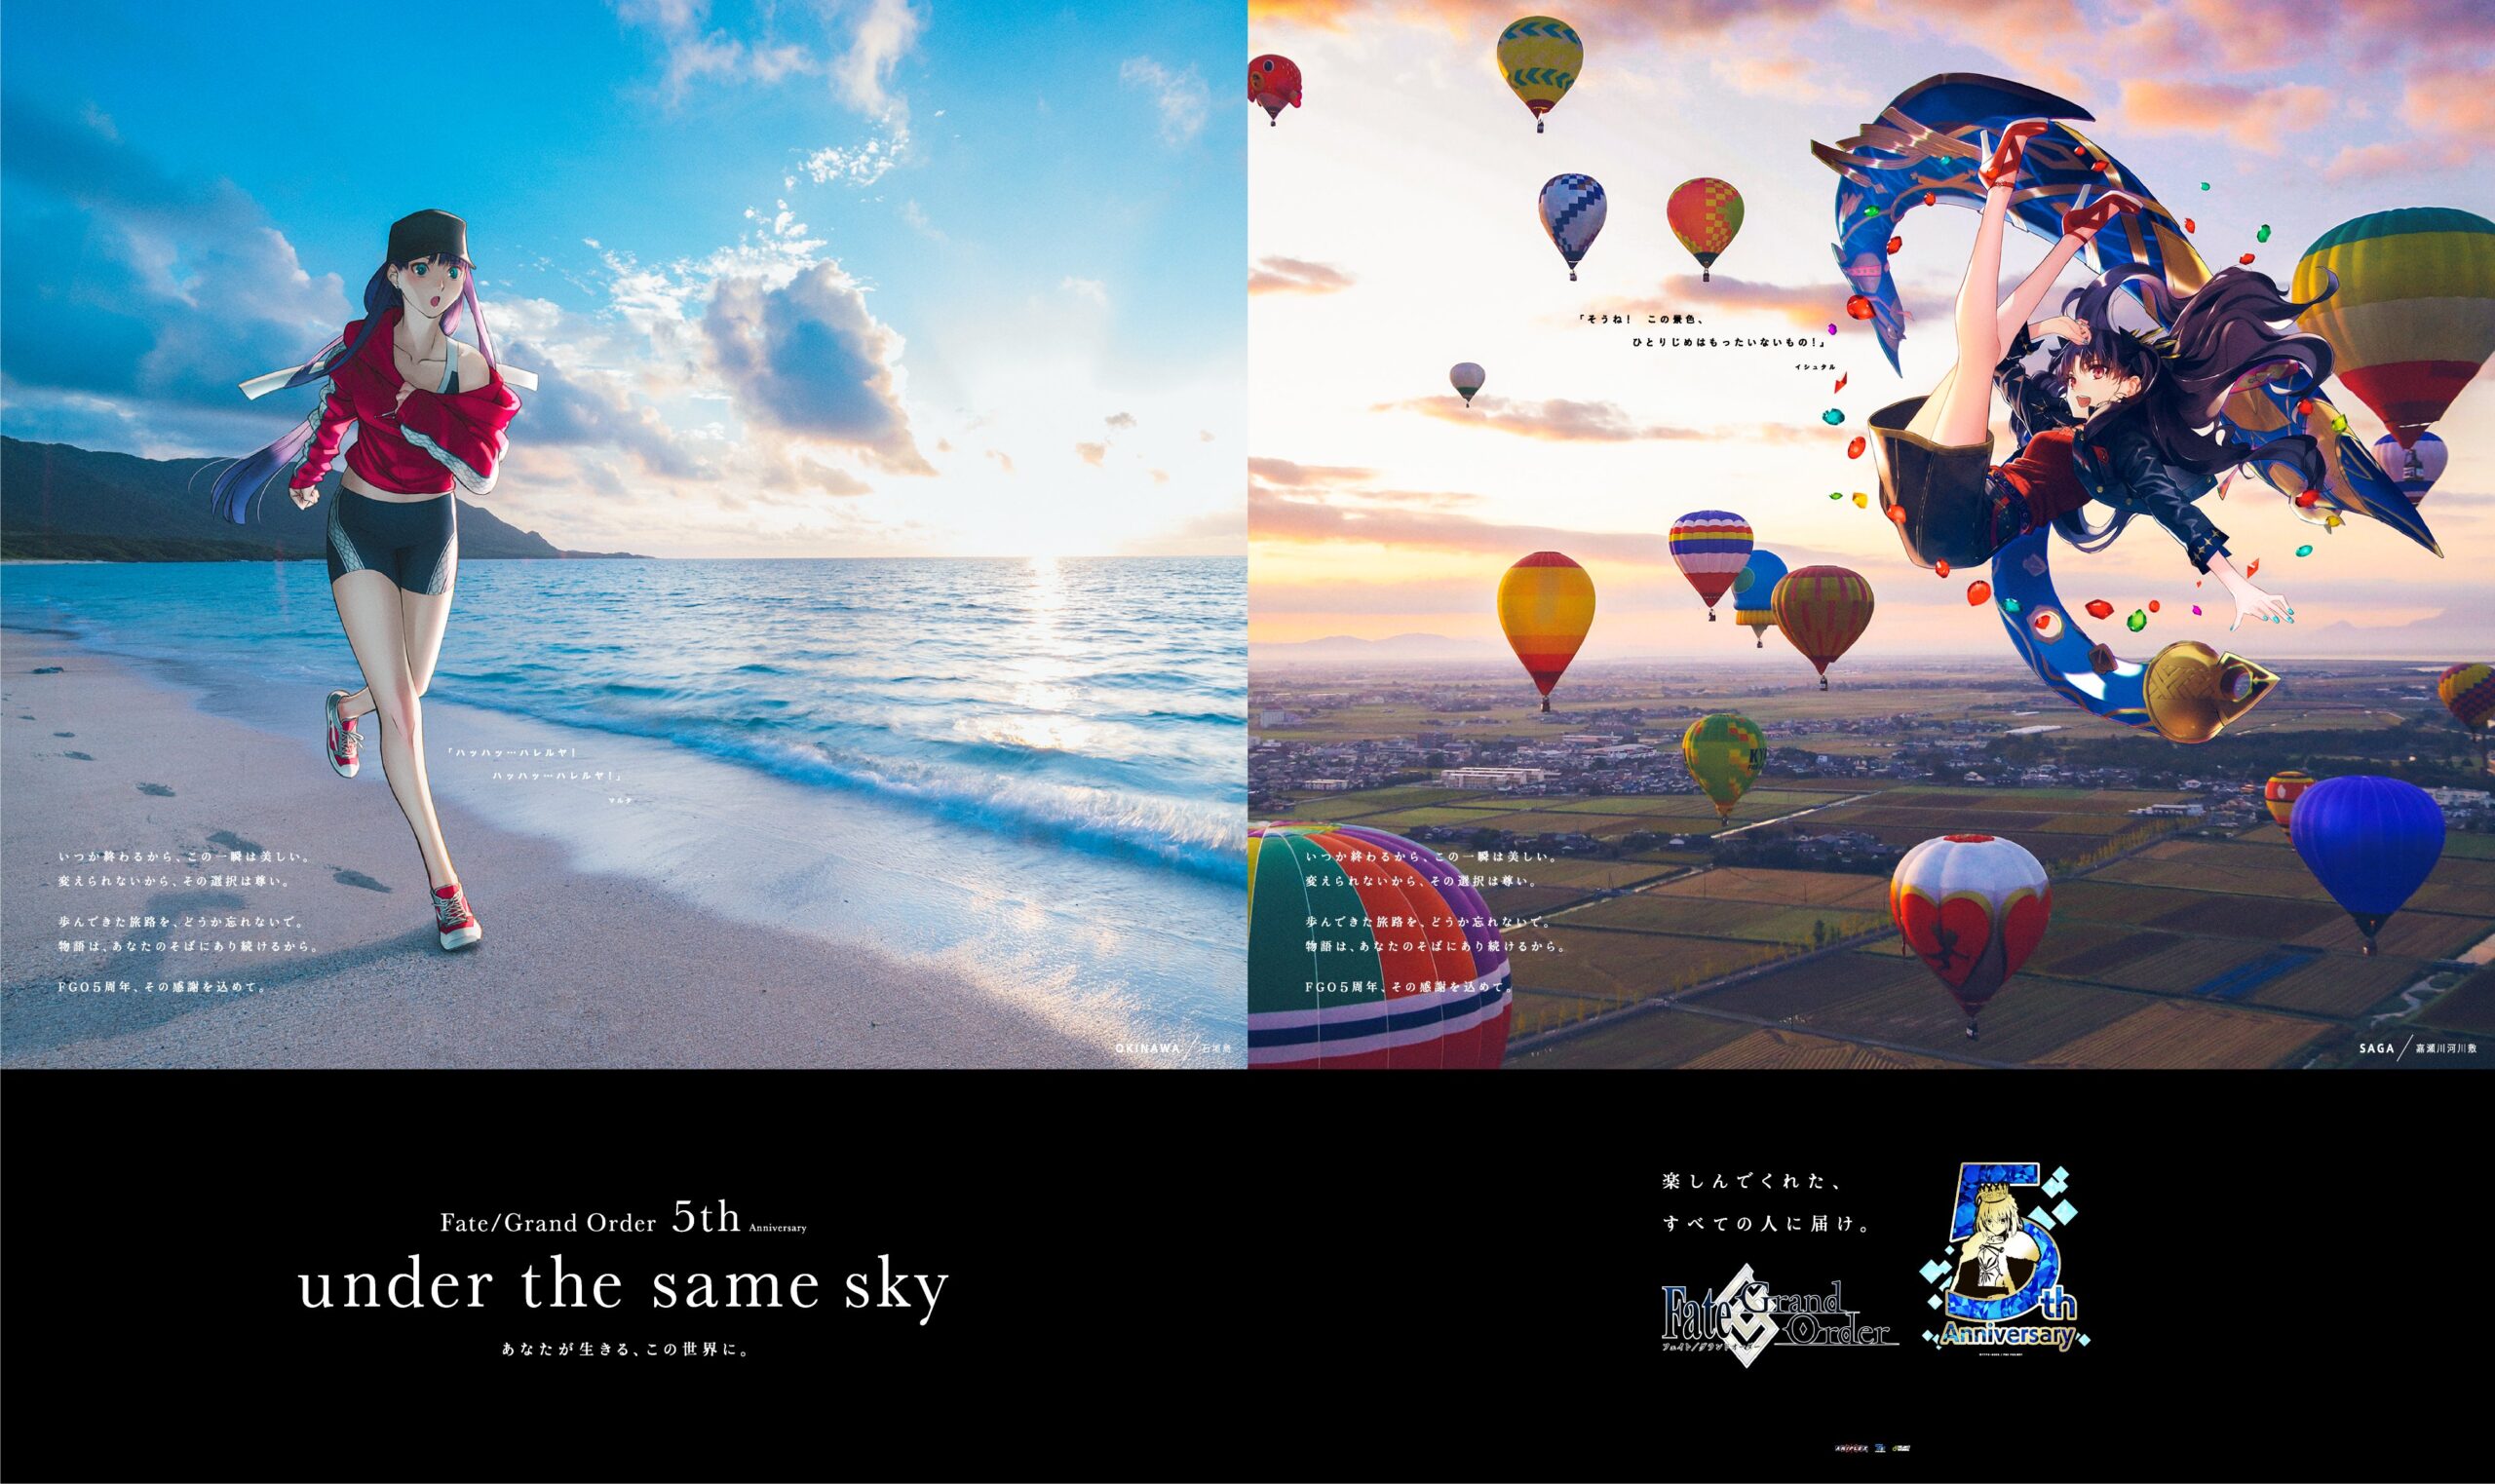 【Fate】FGO5周年記念広告企画「under the same sky」より6月3日(水)から解禁された九州エリアのサーヴァント8騎の描き